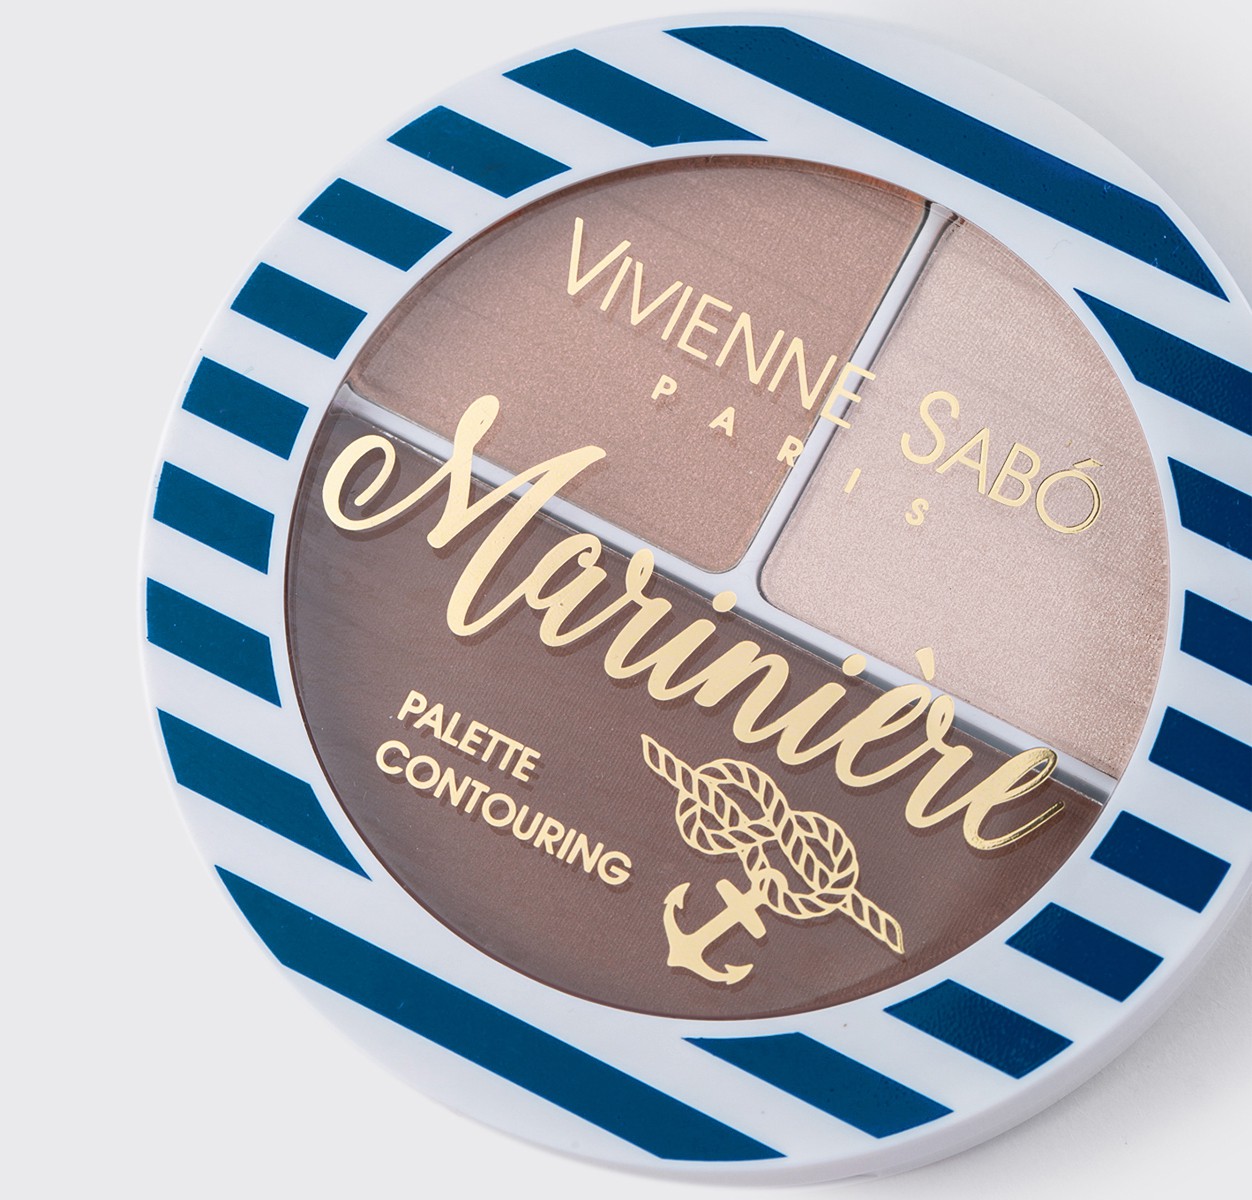 Vivienne Sabo - Face Countouring Palette - Mariniere